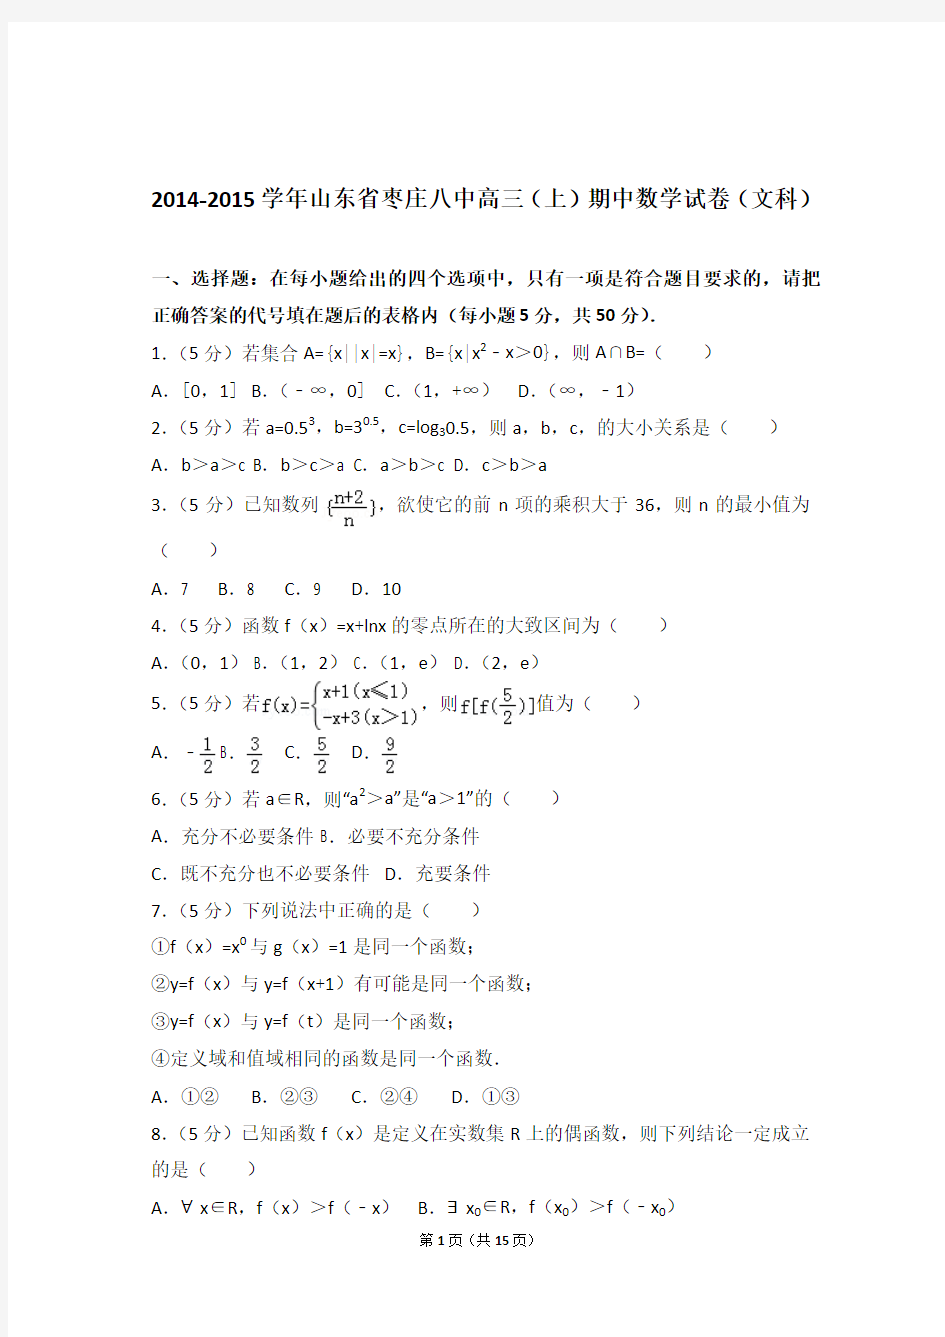 【数学】2014-2015年山东省枣庄八中高三(上)期中数学试卷与答案(文科)